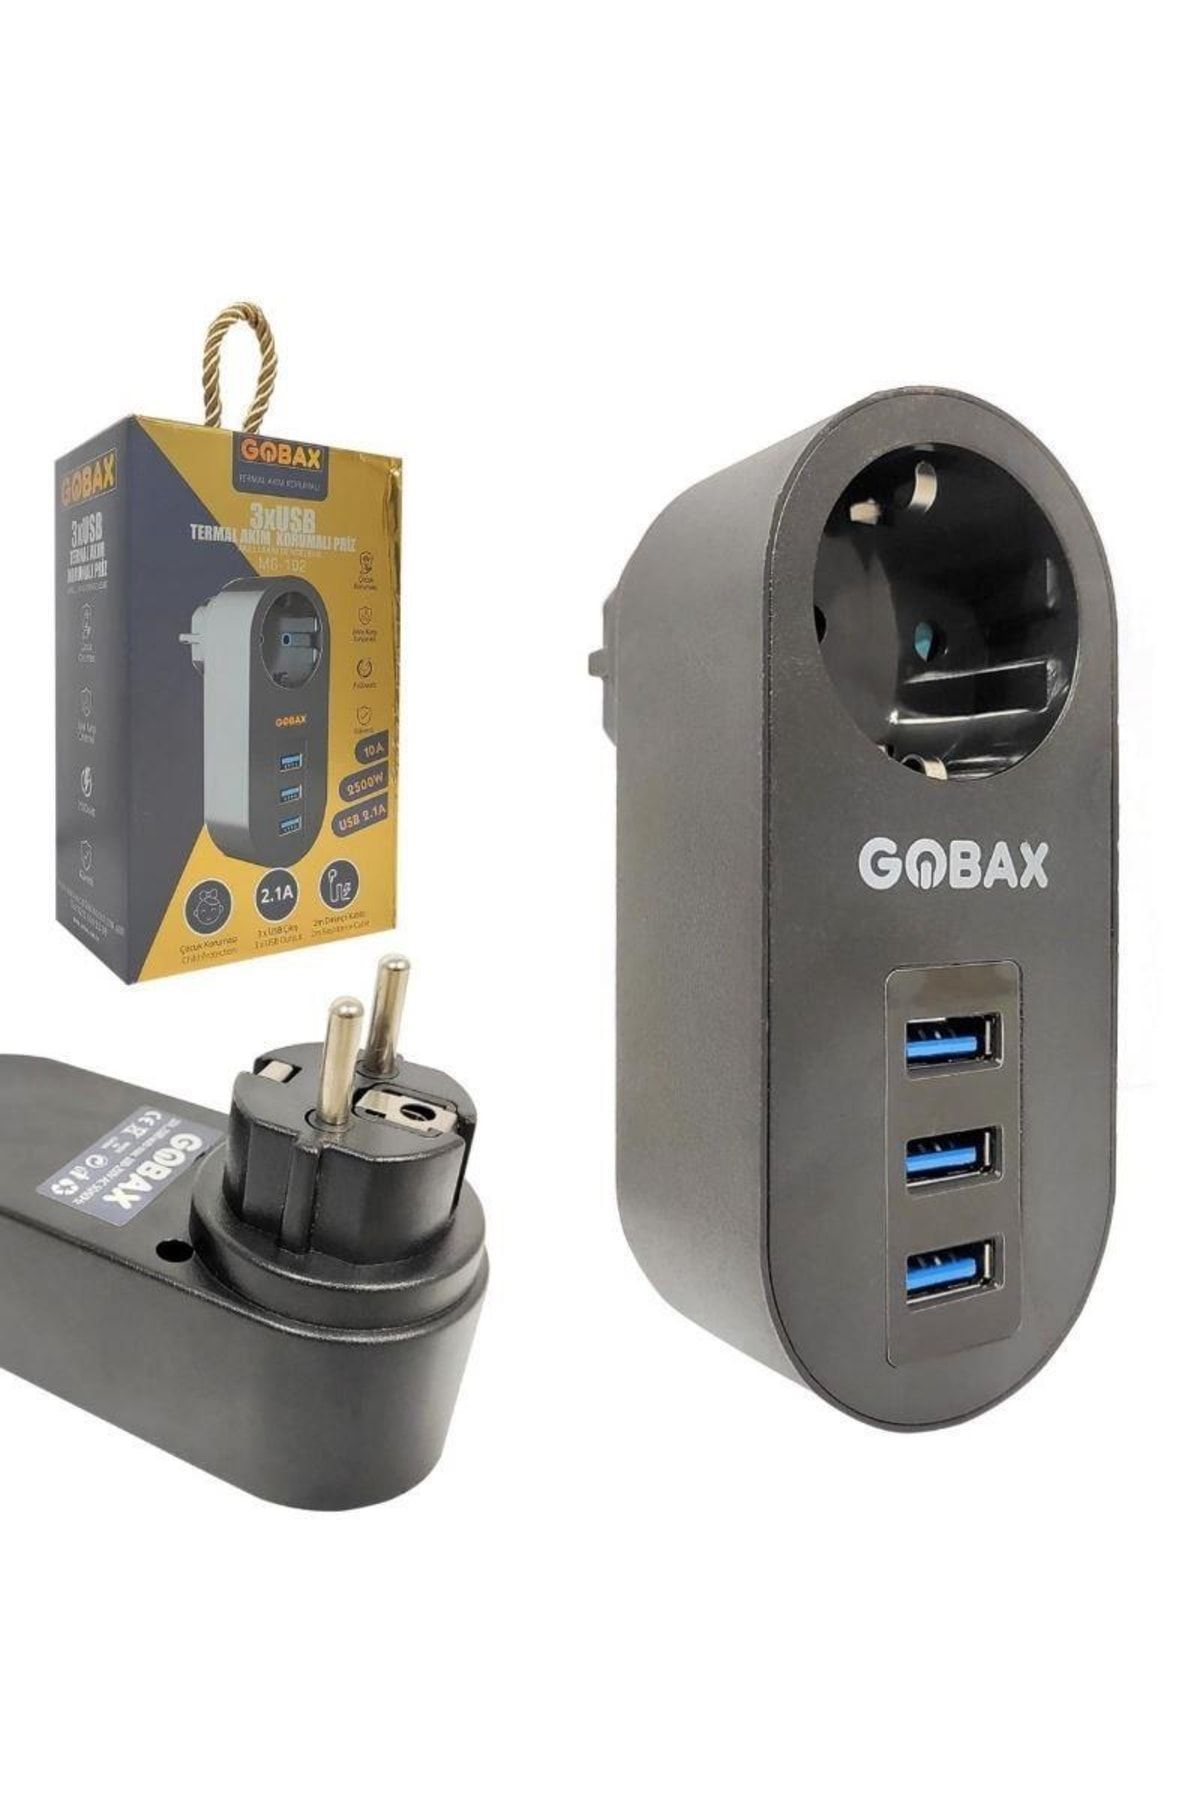 Hatfon Elektronik Gobax Mg-102 Tekli Akım Korumalı Priz 3xusb 2,1a Çıkış Çoçuk Korumalı